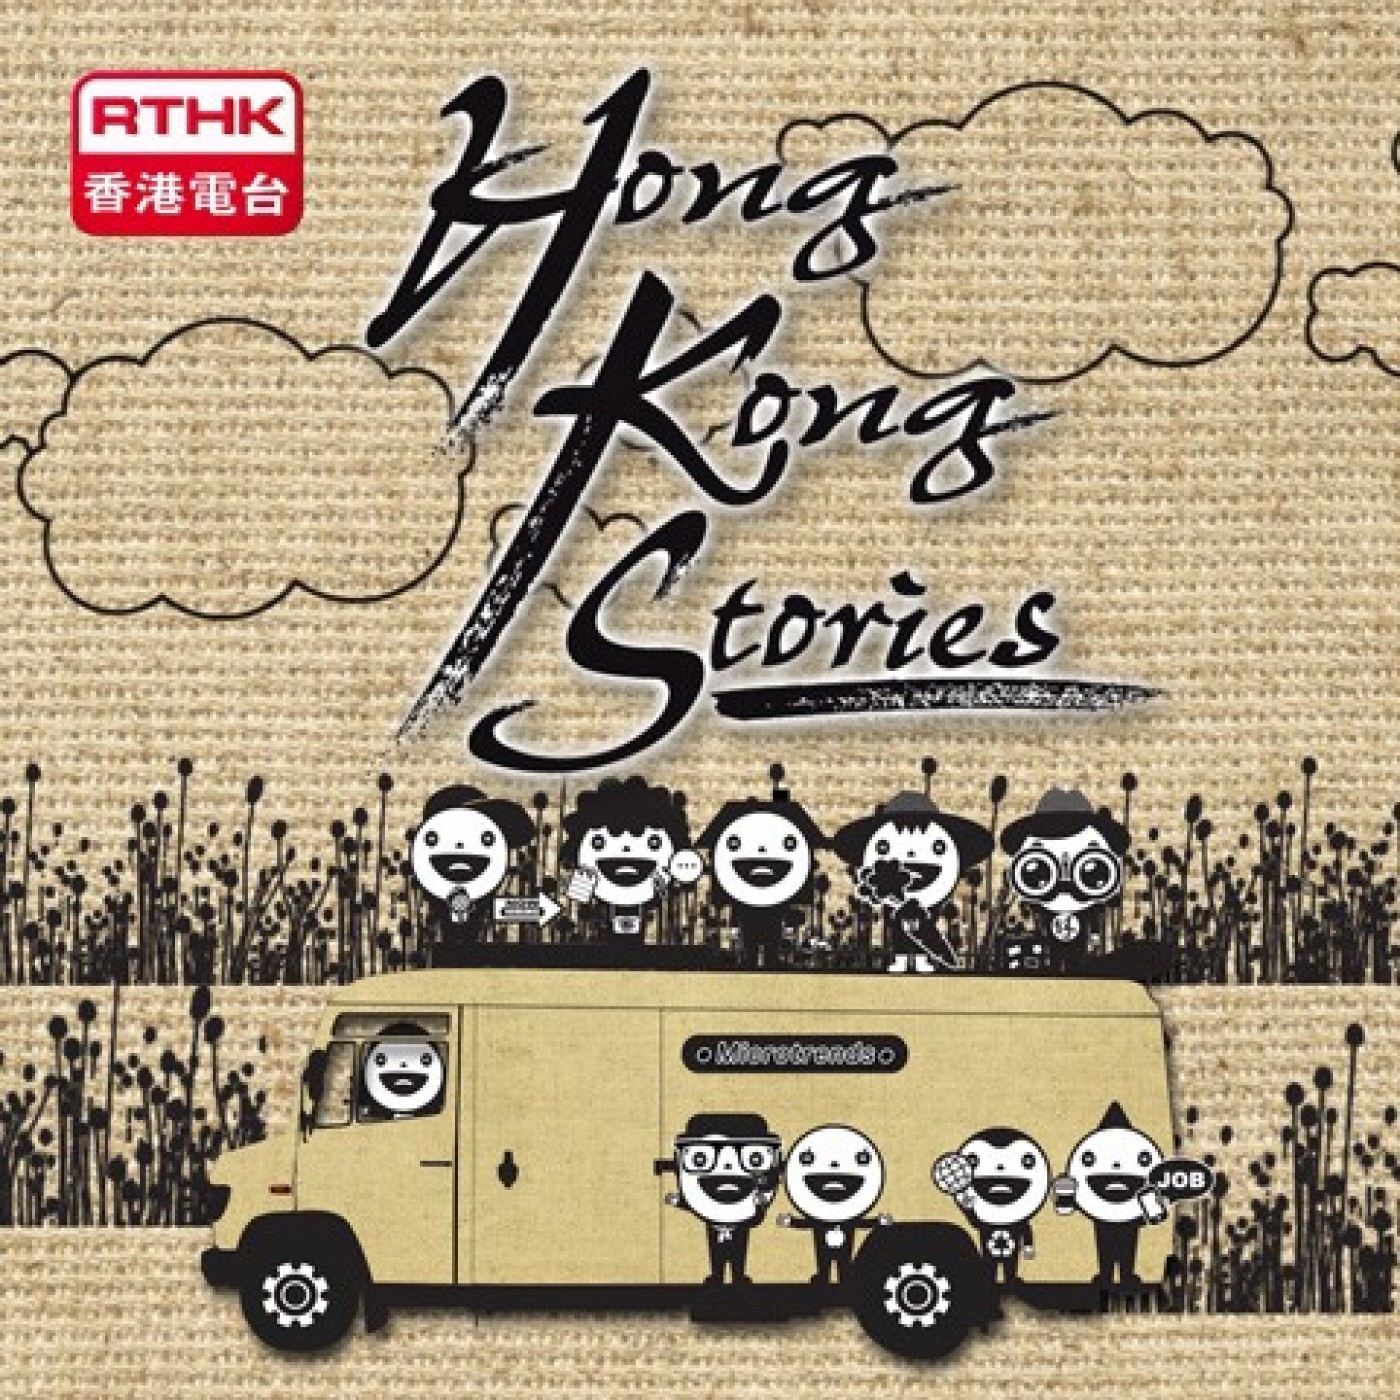 Hong Kong Stories (Series 17)